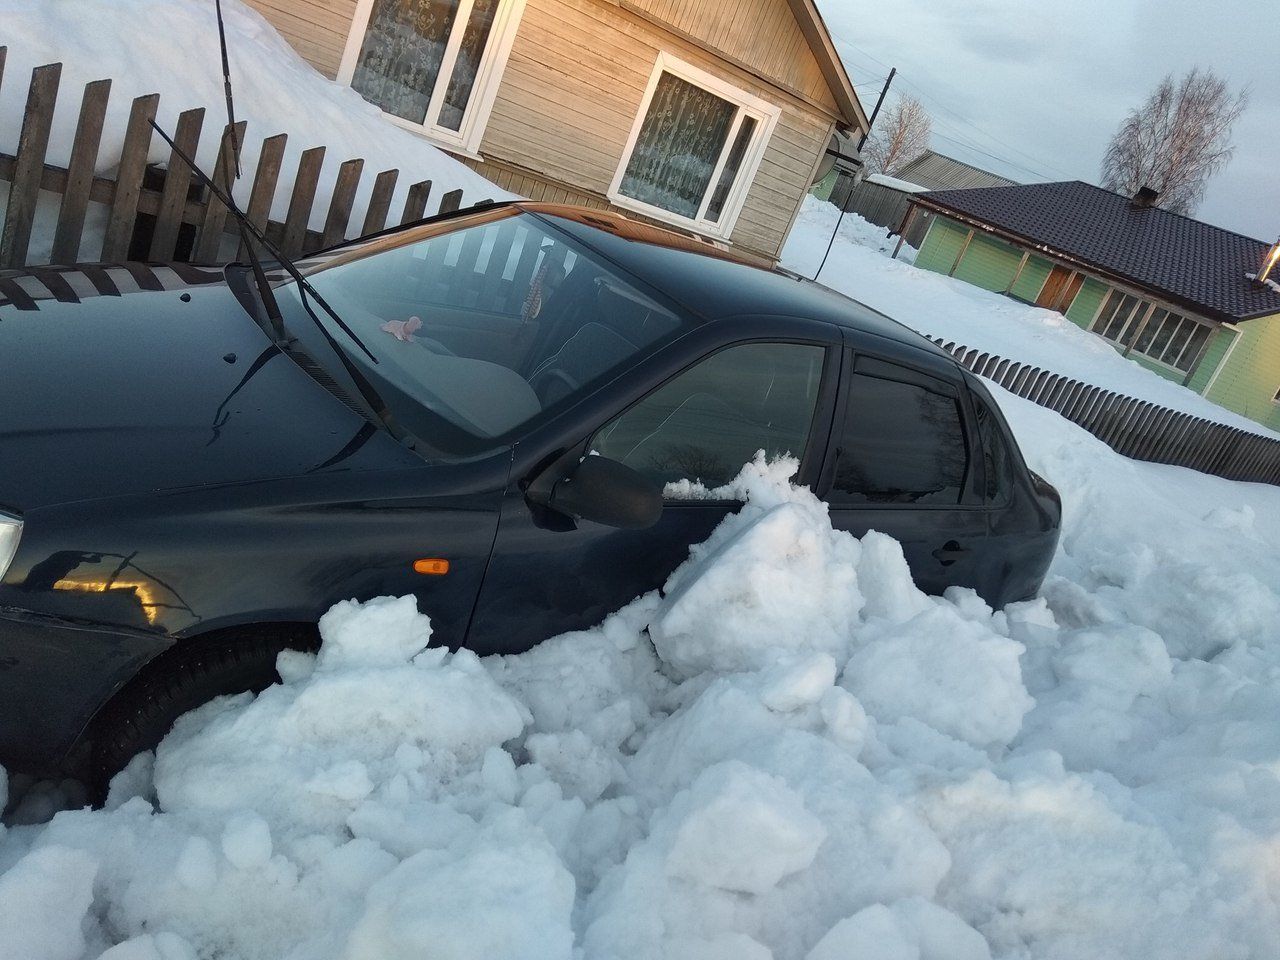 Фото: в Карелии машину засыпало снегом после уборки дорог